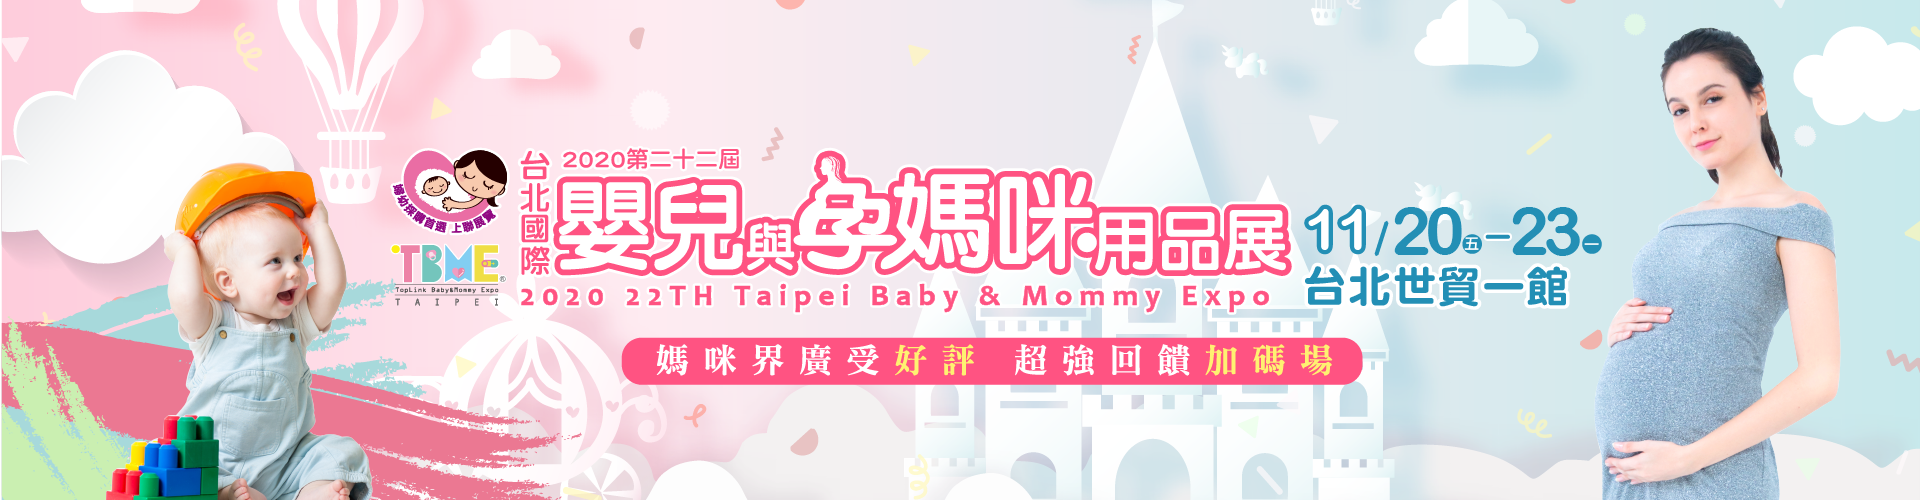 2020台北國際嬰兒與孕媽咪用品展 (秋冬季)